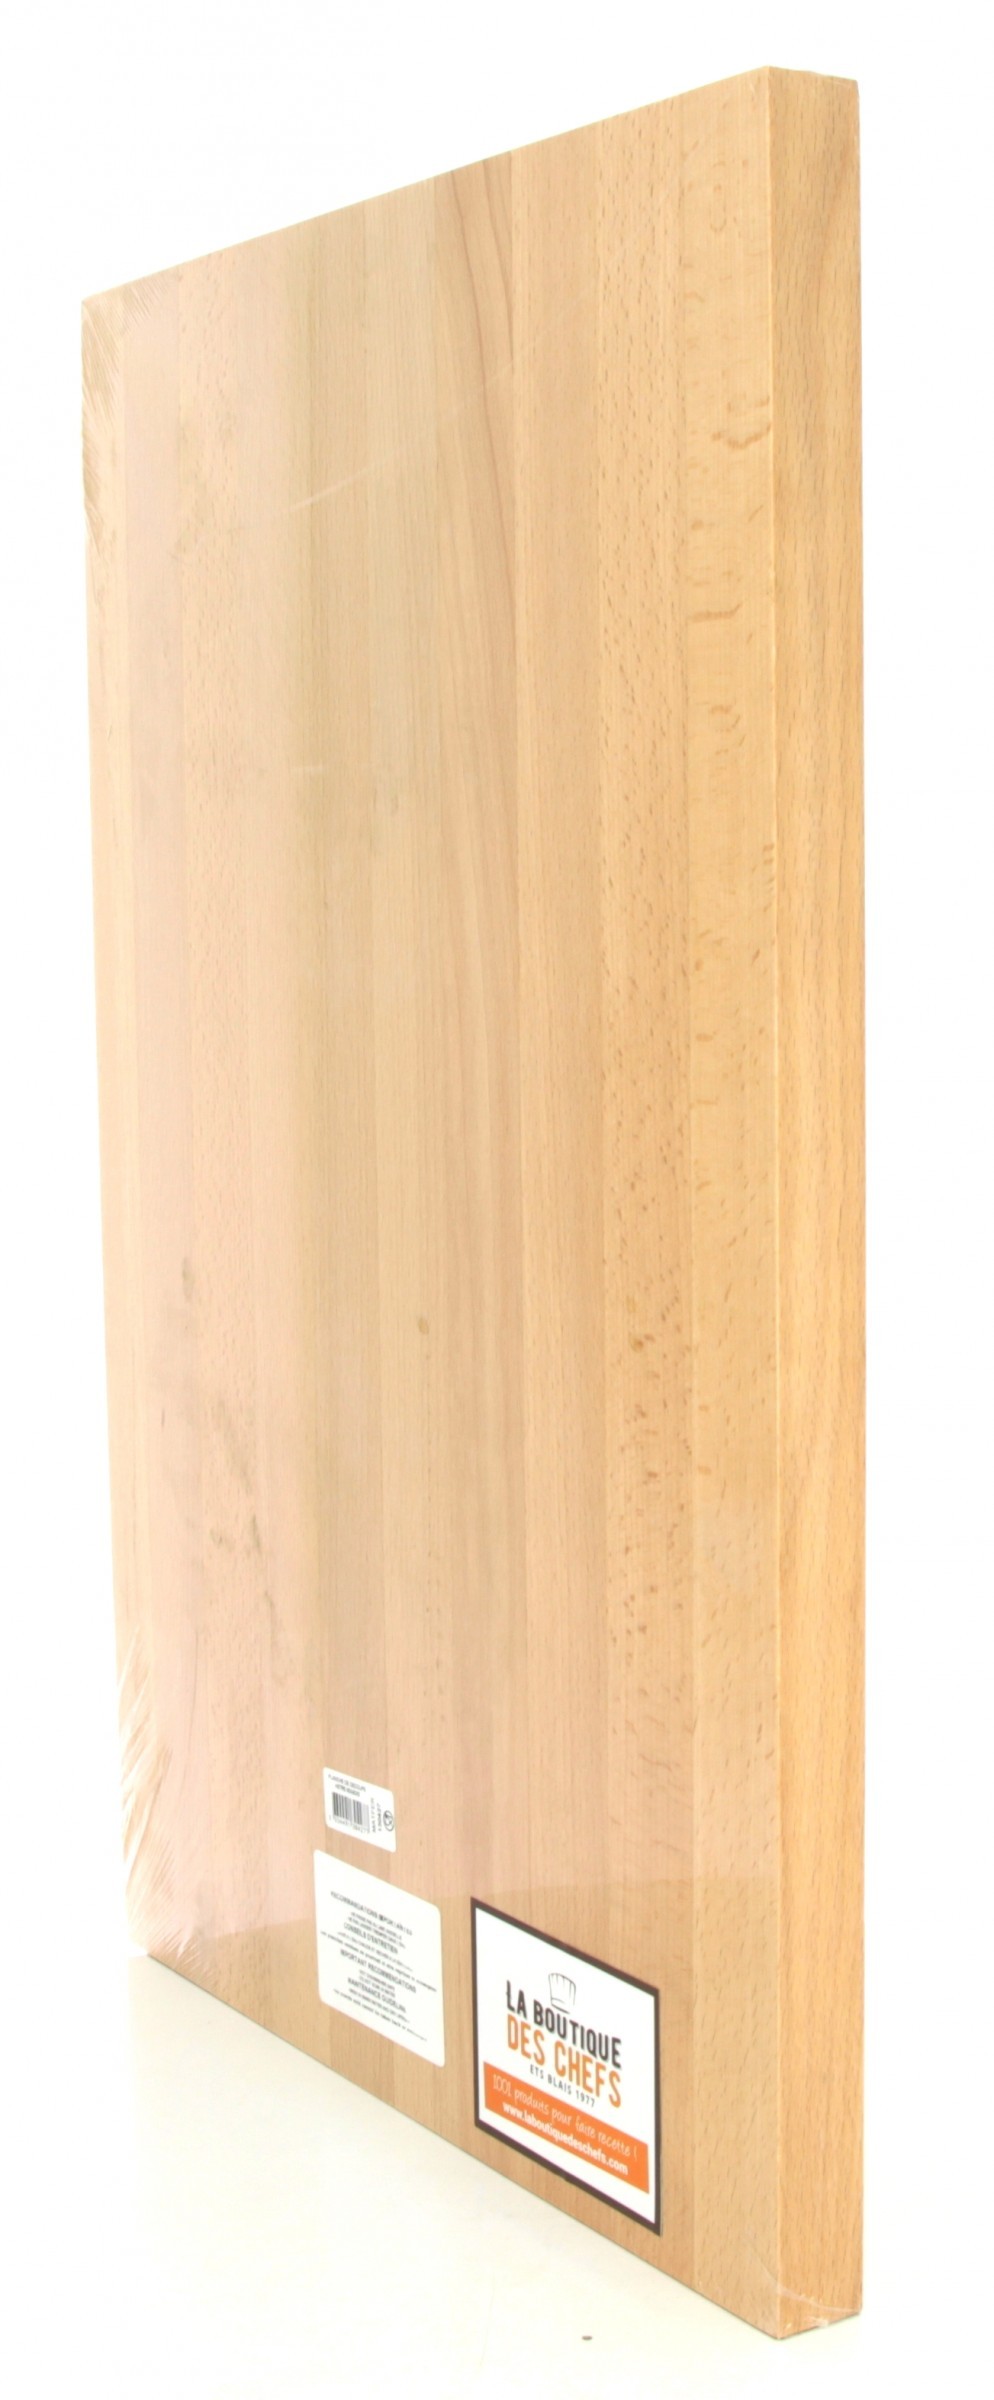 Achat planche de transfert en bois version courte